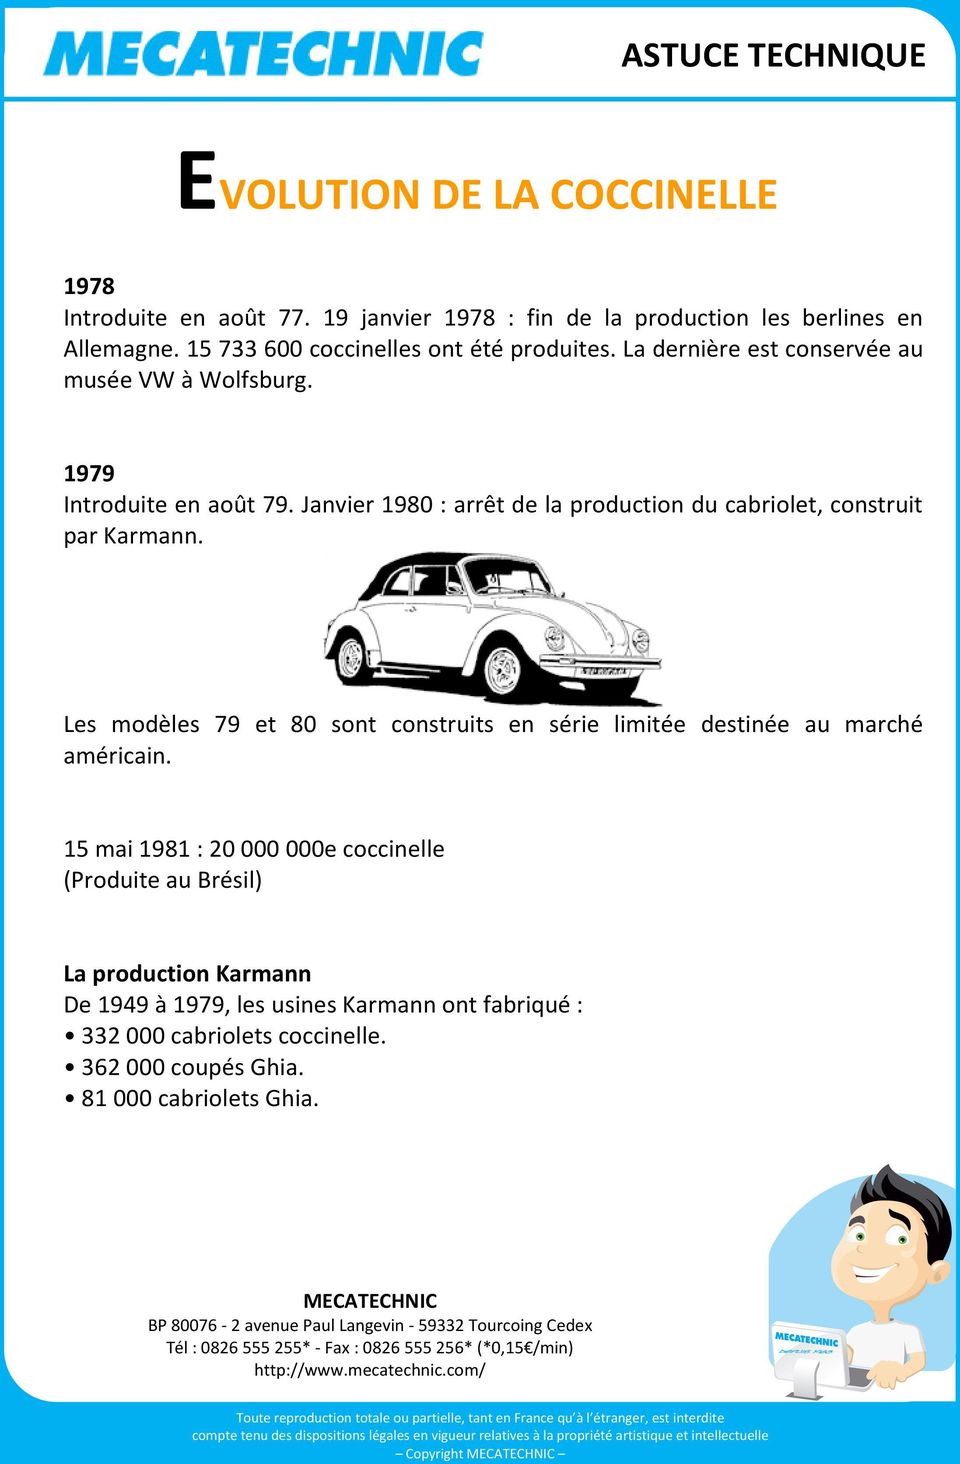 Janvier 1980 : arrêt de la production du cabriolet, construit par Karmann.